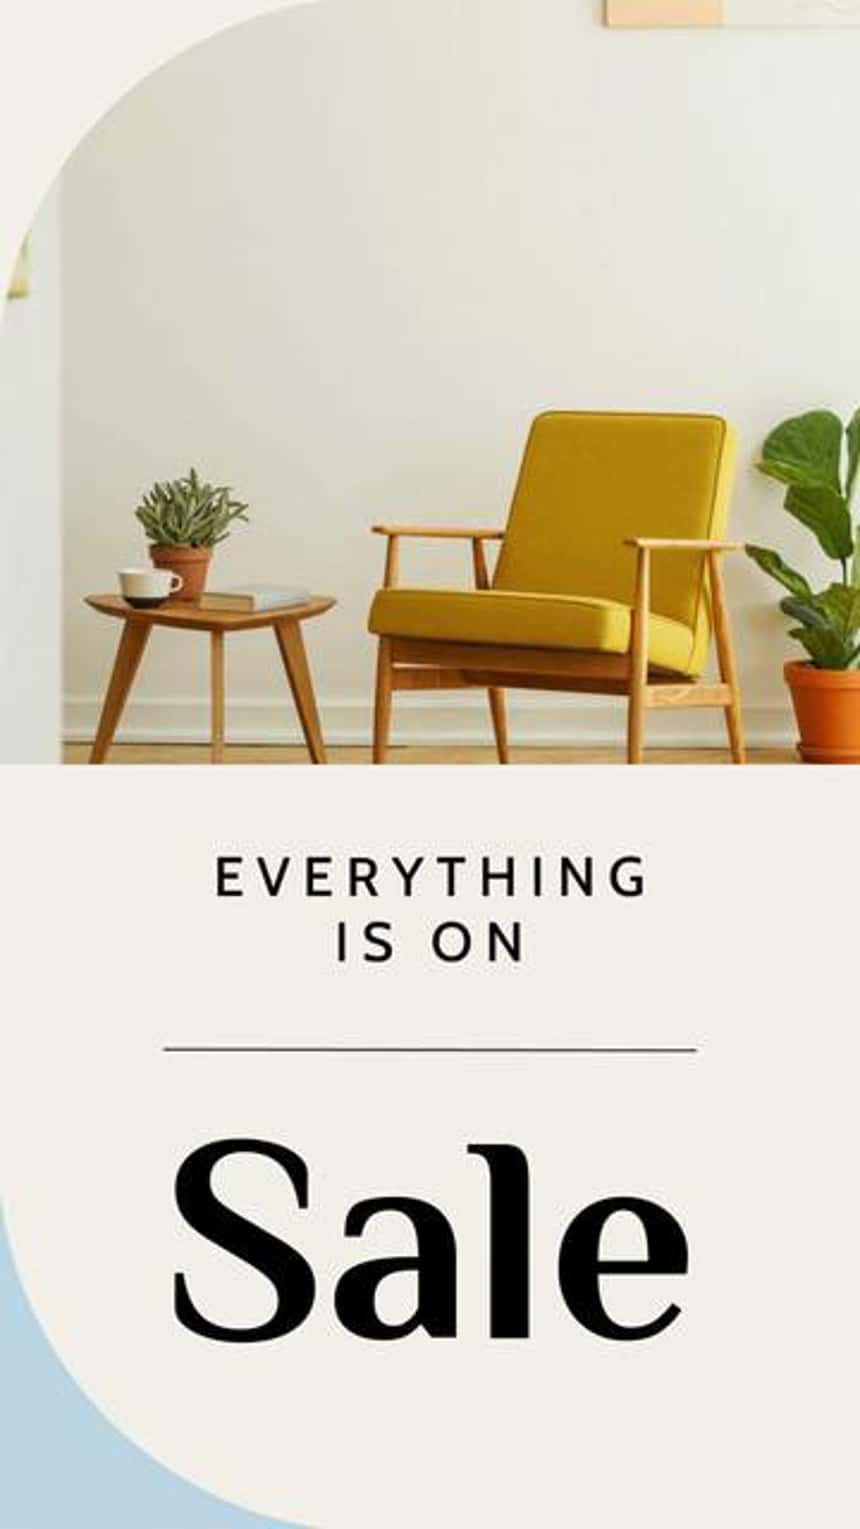 Modèle de vidéo publicitaire Instagram pour une entreprise de meubles. L'image montre une chaise jaune, des plantes et une table d'appoint. Le texte se lit comme suit : « Tout est en solde ».